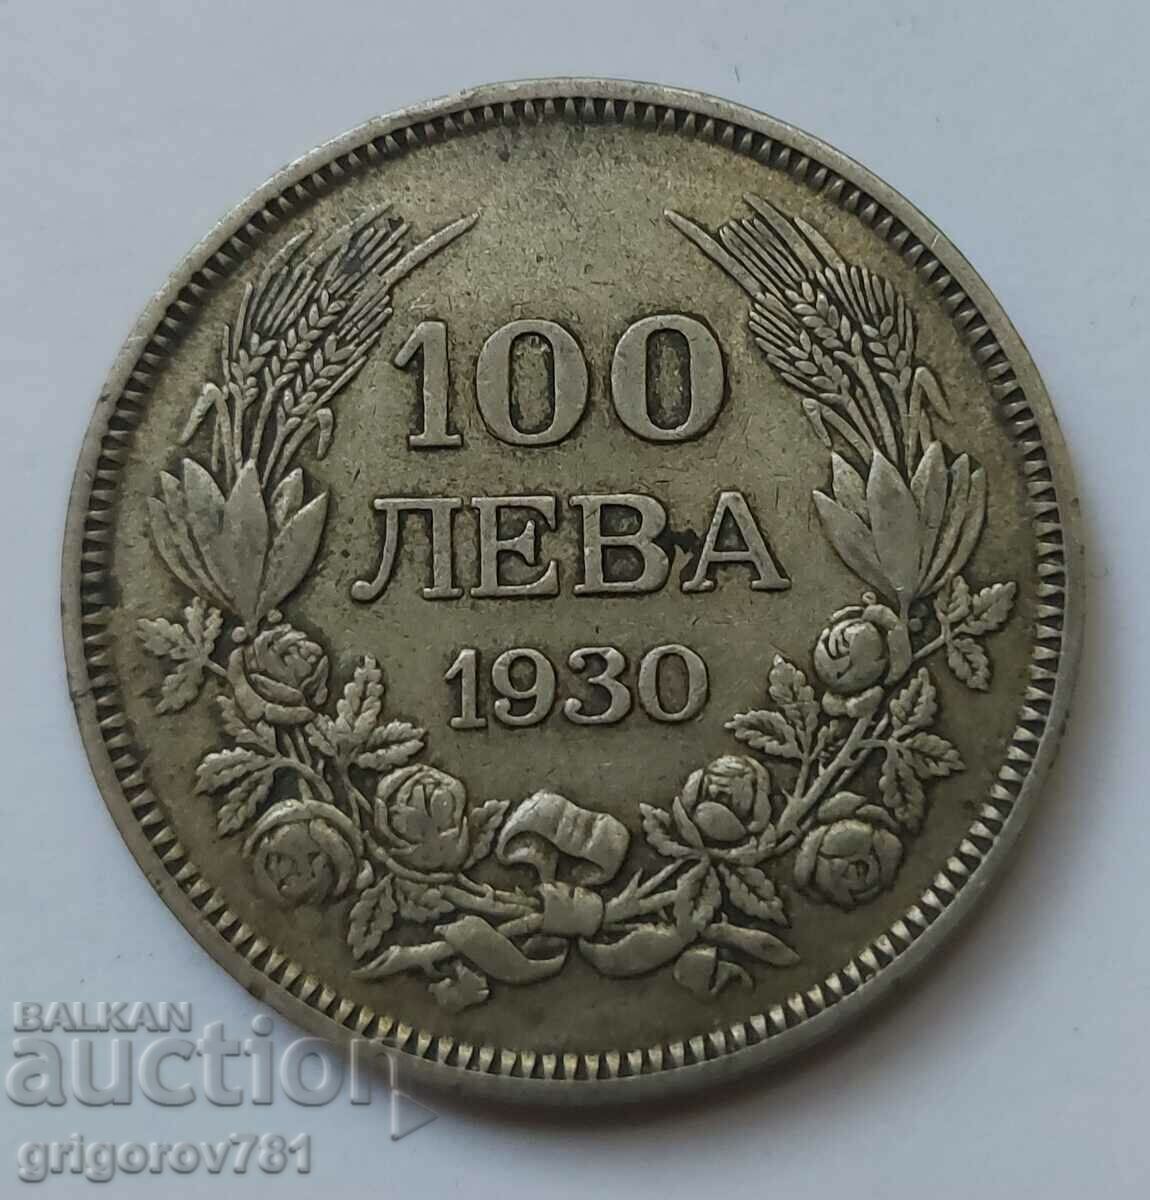 100 leva silver Bulgaria 1930 - silver coin #18